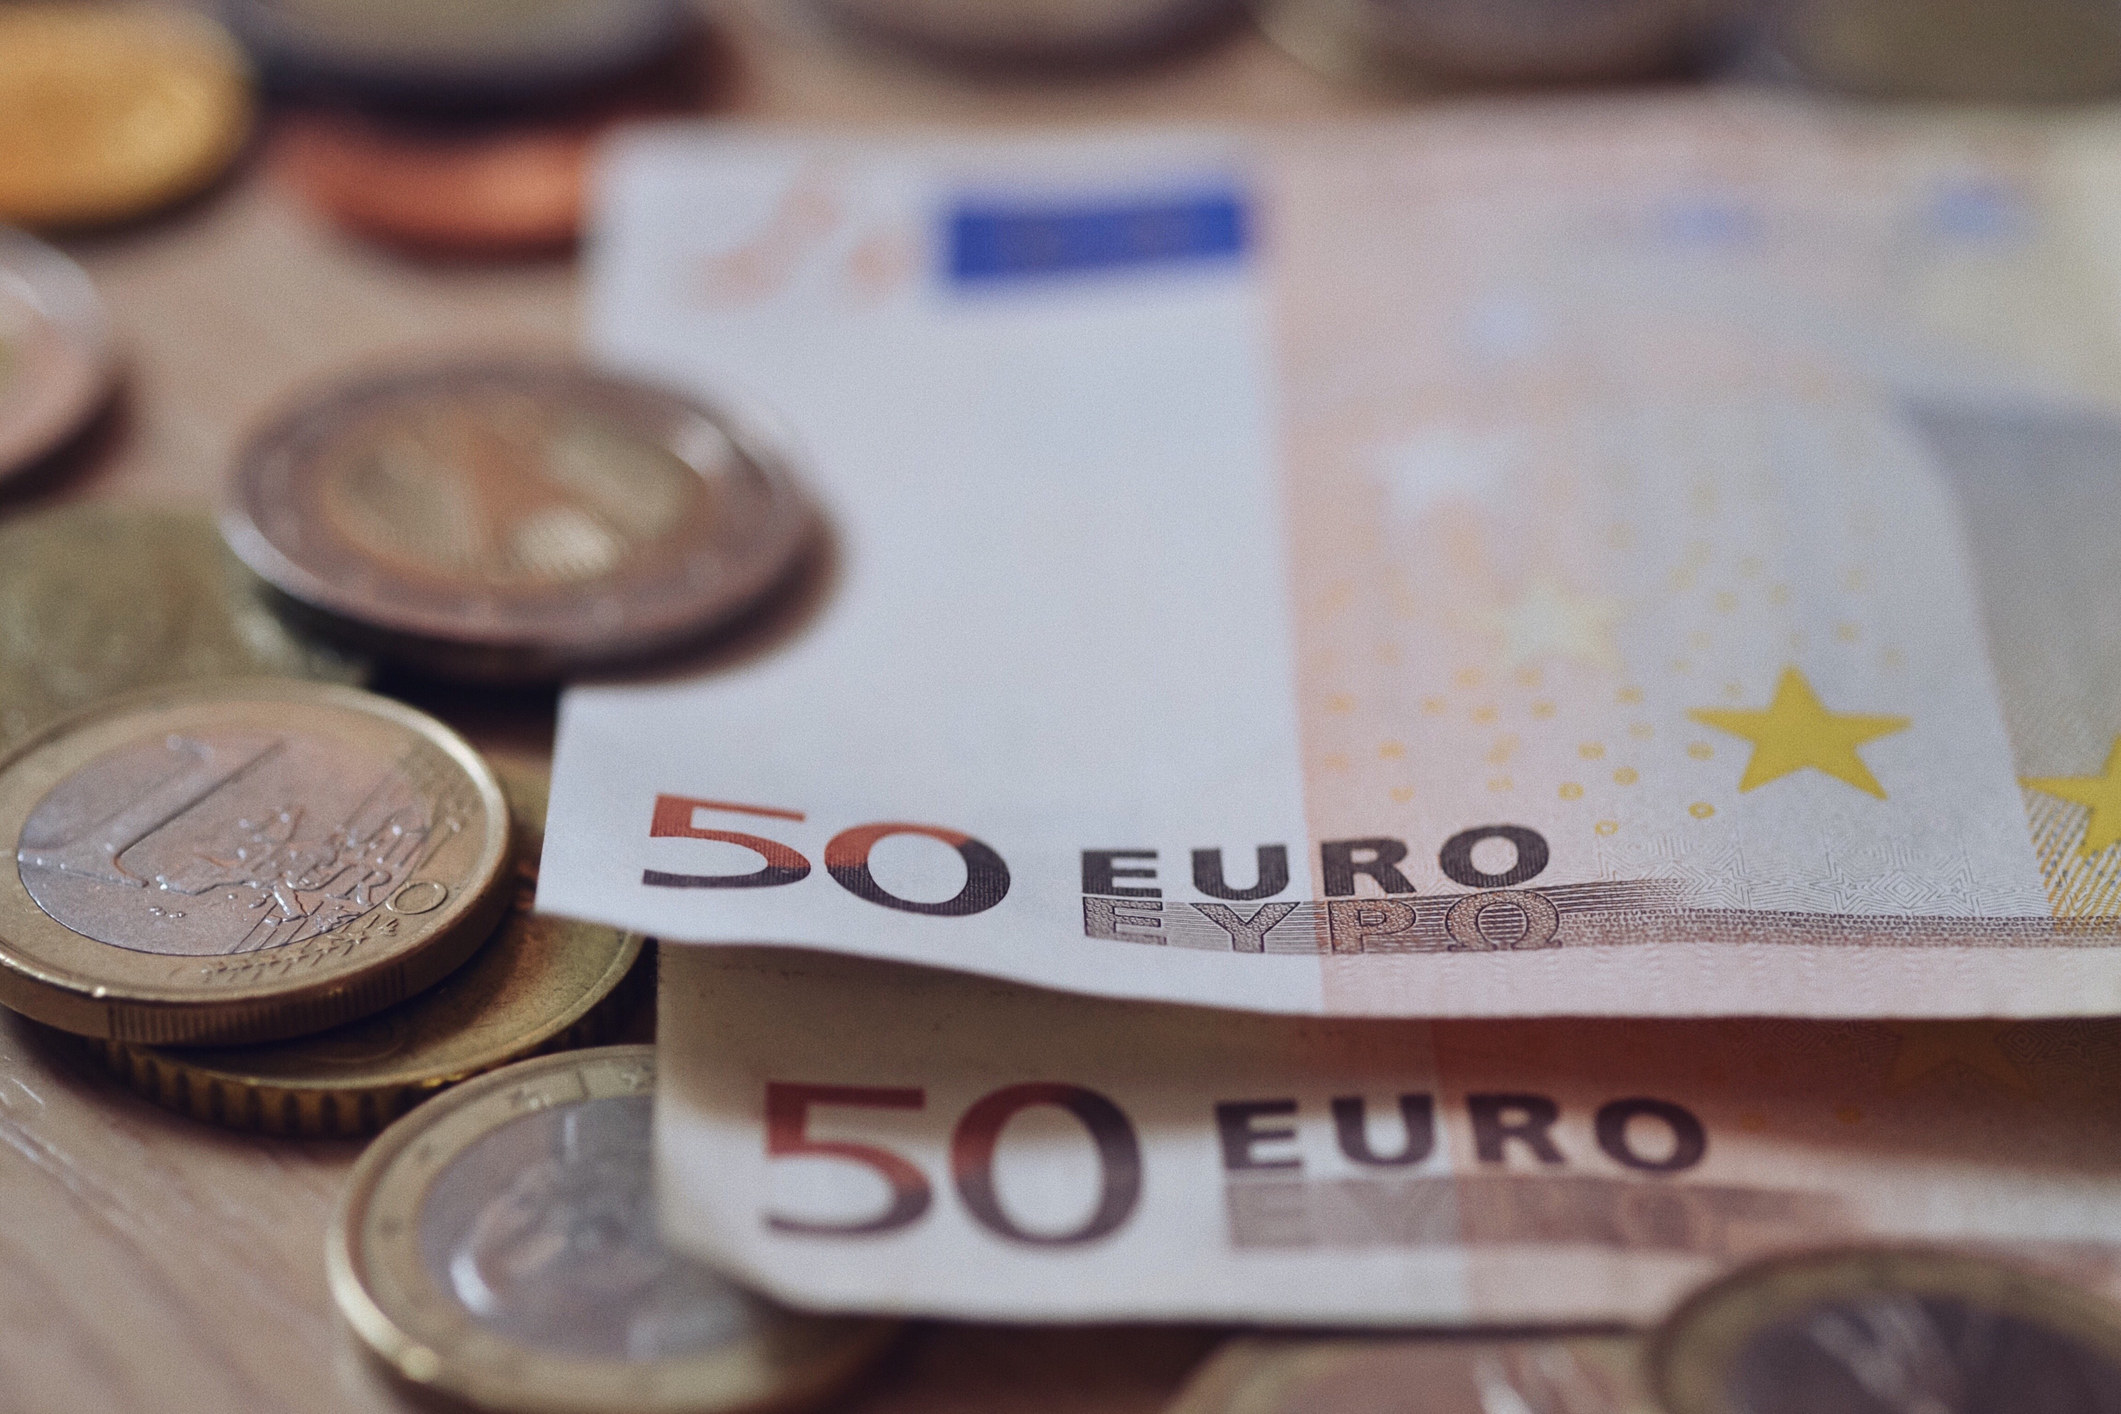 euros on a table